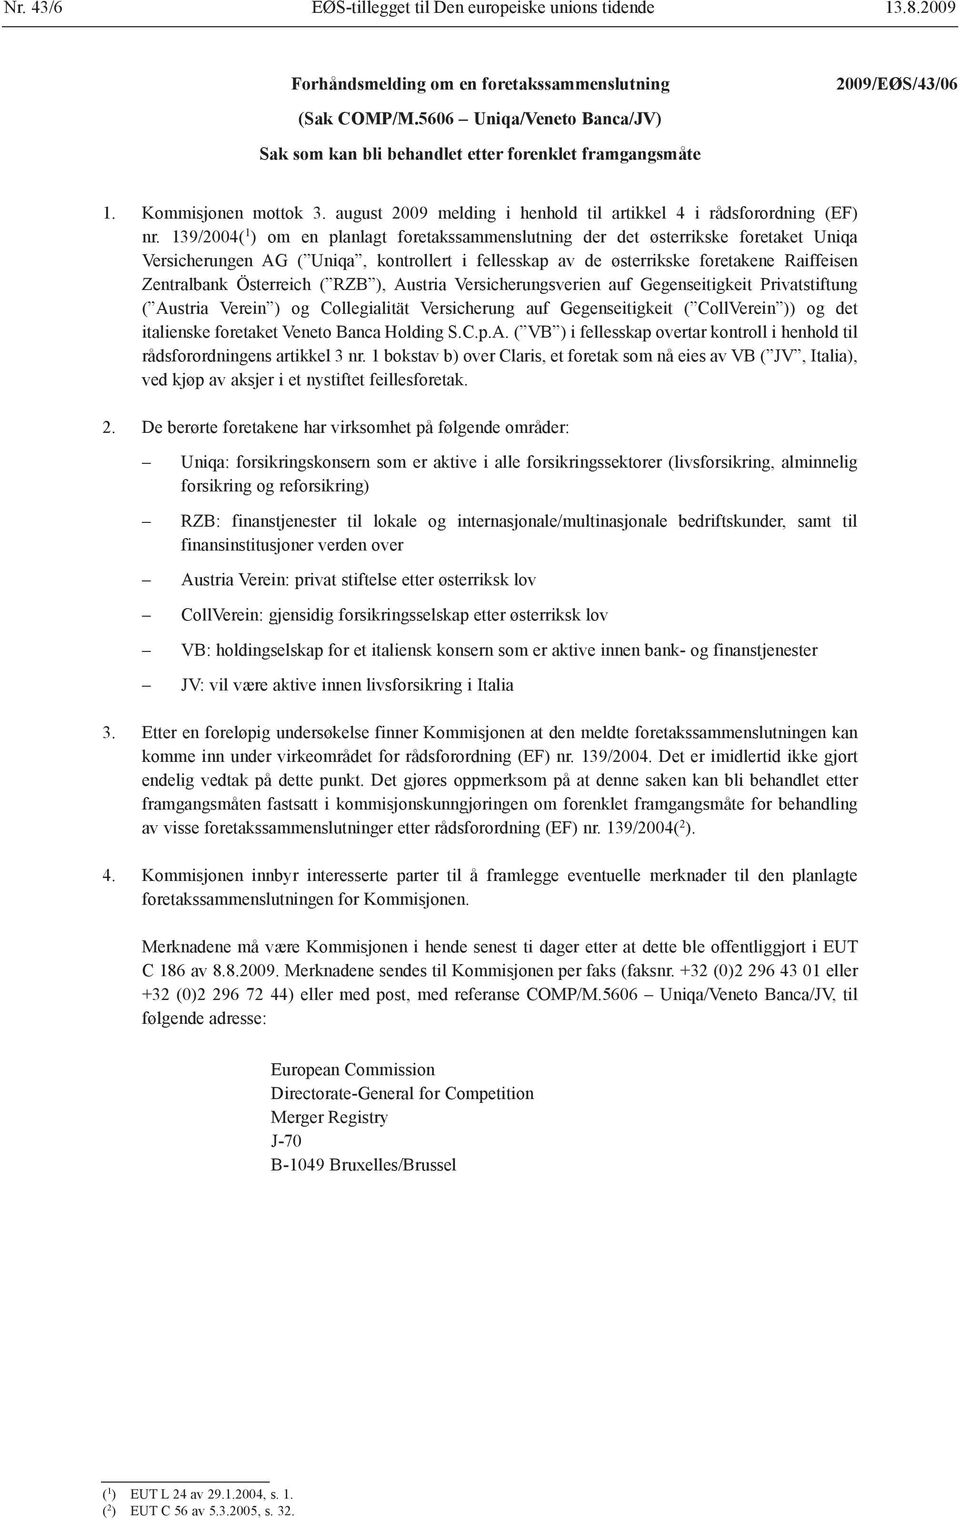 139/2004( 1 ) om en planlagt foretakssammenslutning der det østerrikske foretaket Uniqa Versicherungen AG ( Uniqa, kontrollert i fellesskap av de østerrikske foretakene Raiffeisen Zentralbank